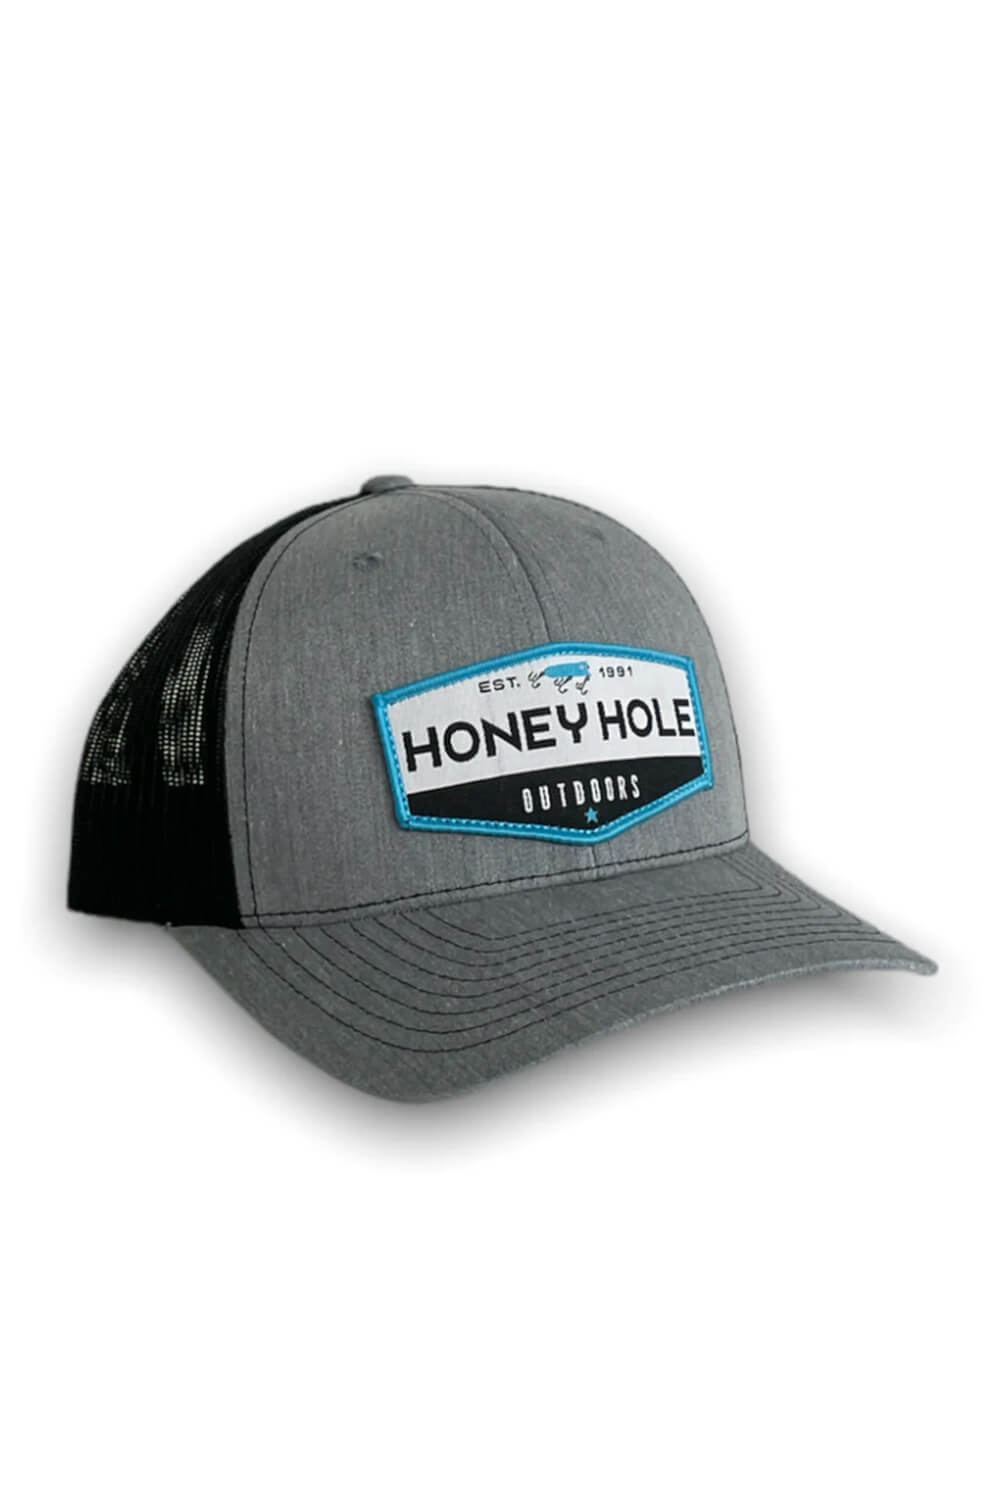 Honey Hole OG Hex Trucker Hat for Men in Grey at Glik's , Os